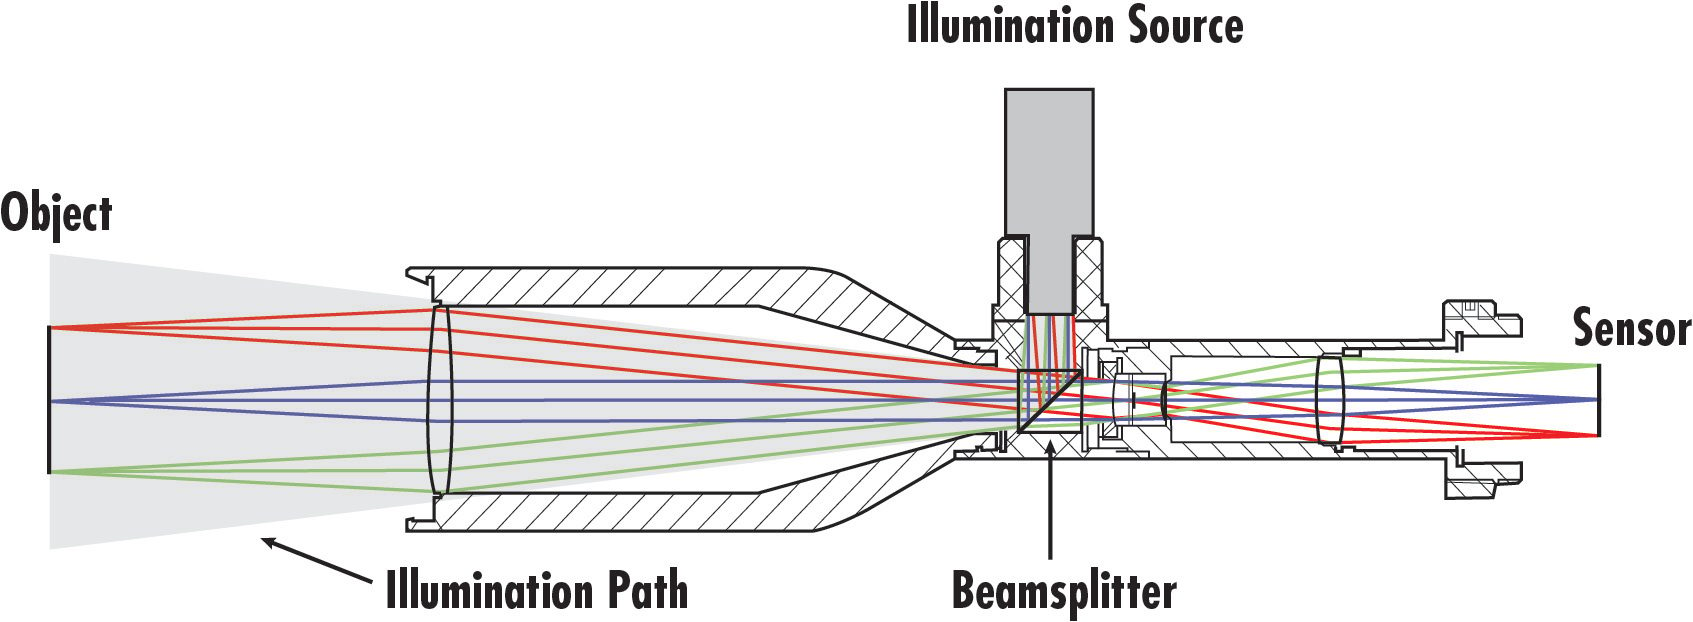 Figure 6. In-line illumination